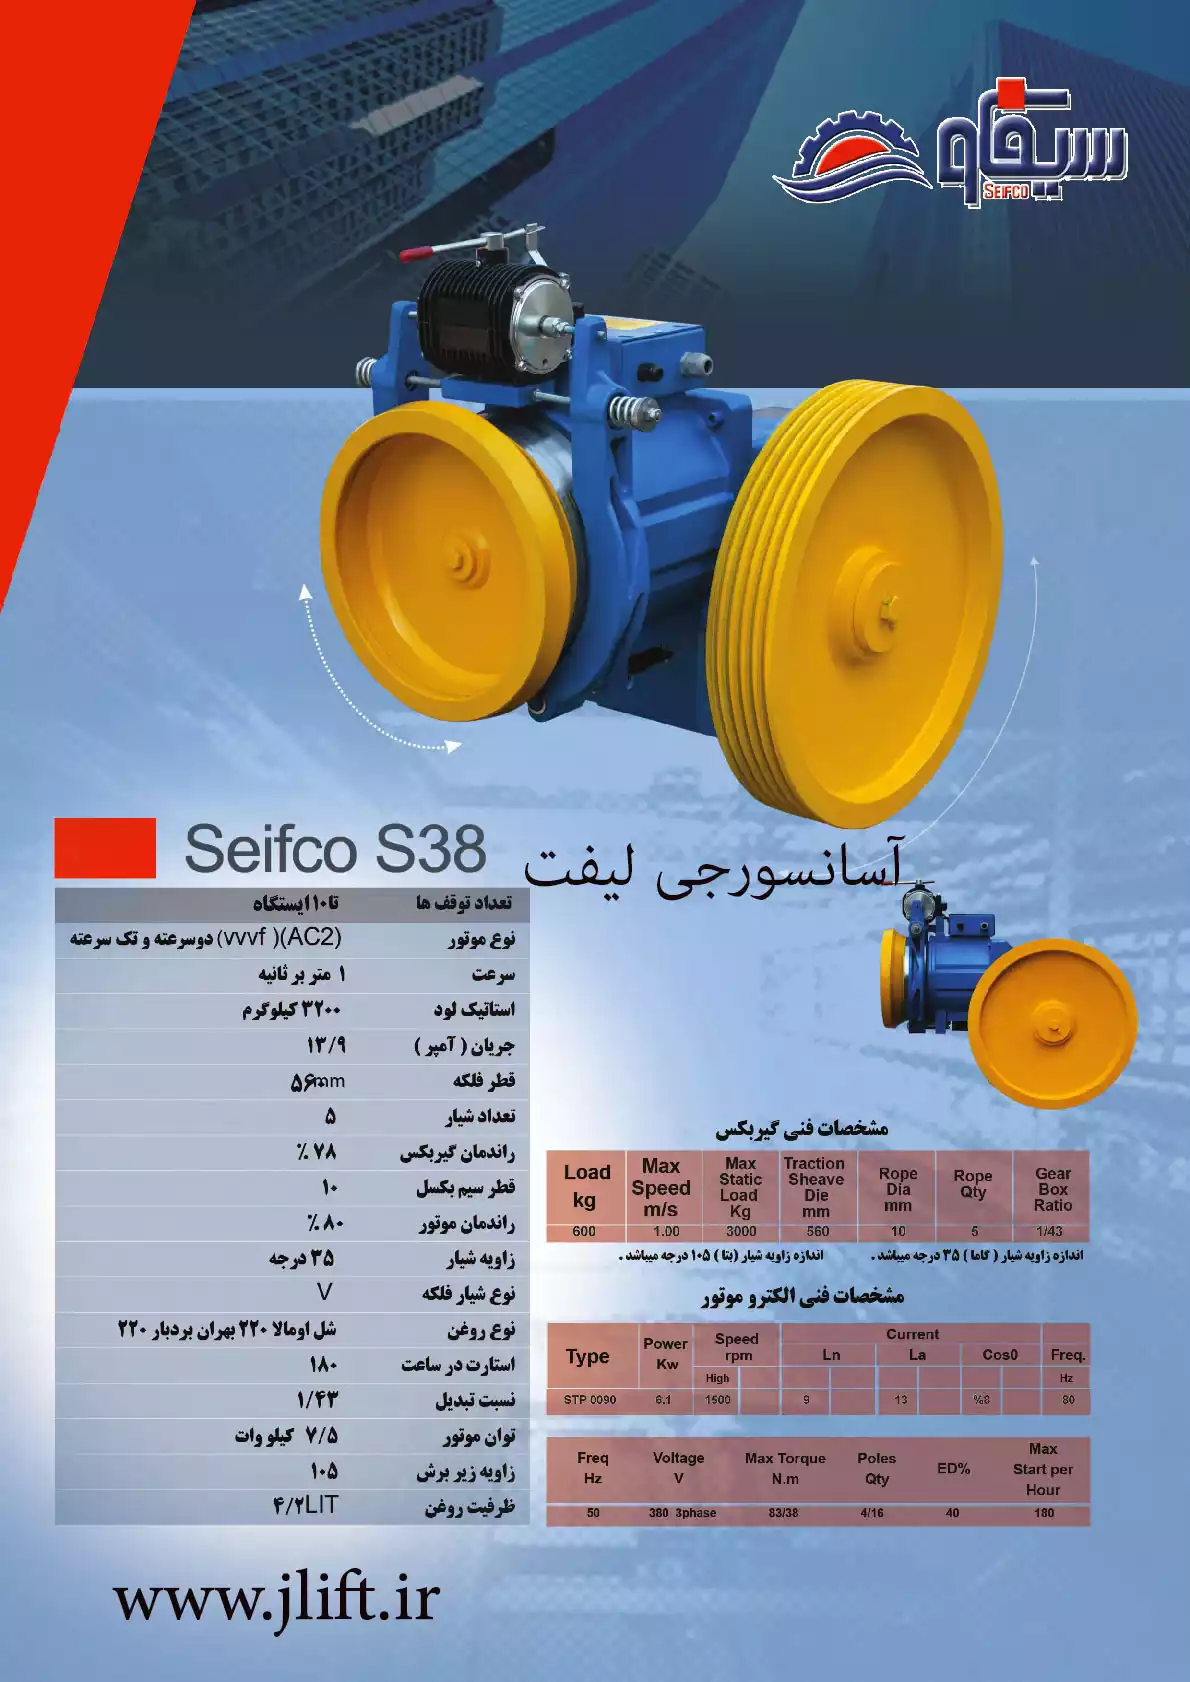 بهترین برند موتور آسانسور ایرانی سیفکو (seifco)